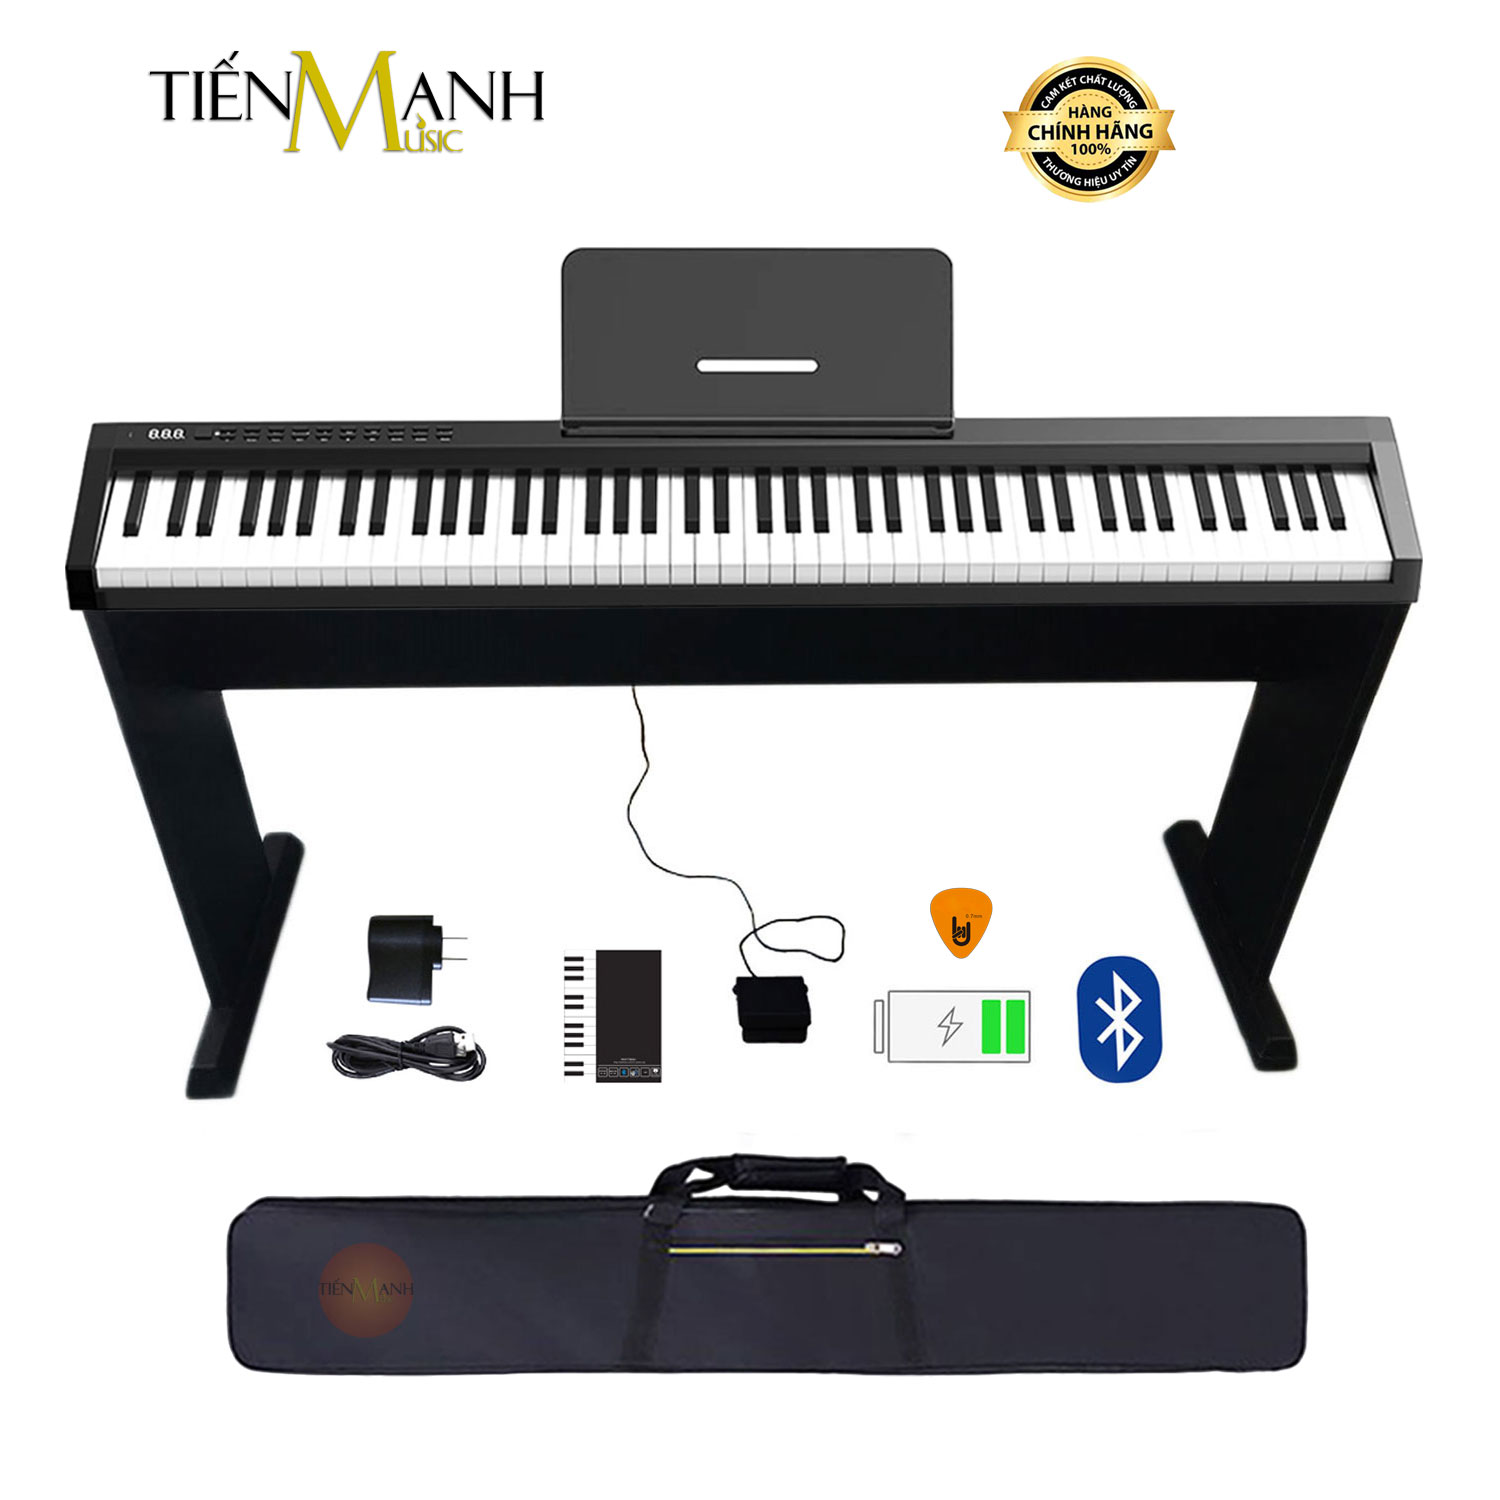 Bộ Đàn Piano Điện Konix PH88C 88 Phím nặng Cảm ứng lực - Midi Keyboard Controllers (Chân Gỗ, Loa kép, Bluetooth, Pin sạc, Loa lớn, Kết nối máy tính và điện thoại) - Kèm Móng Gẩy DreamMaker